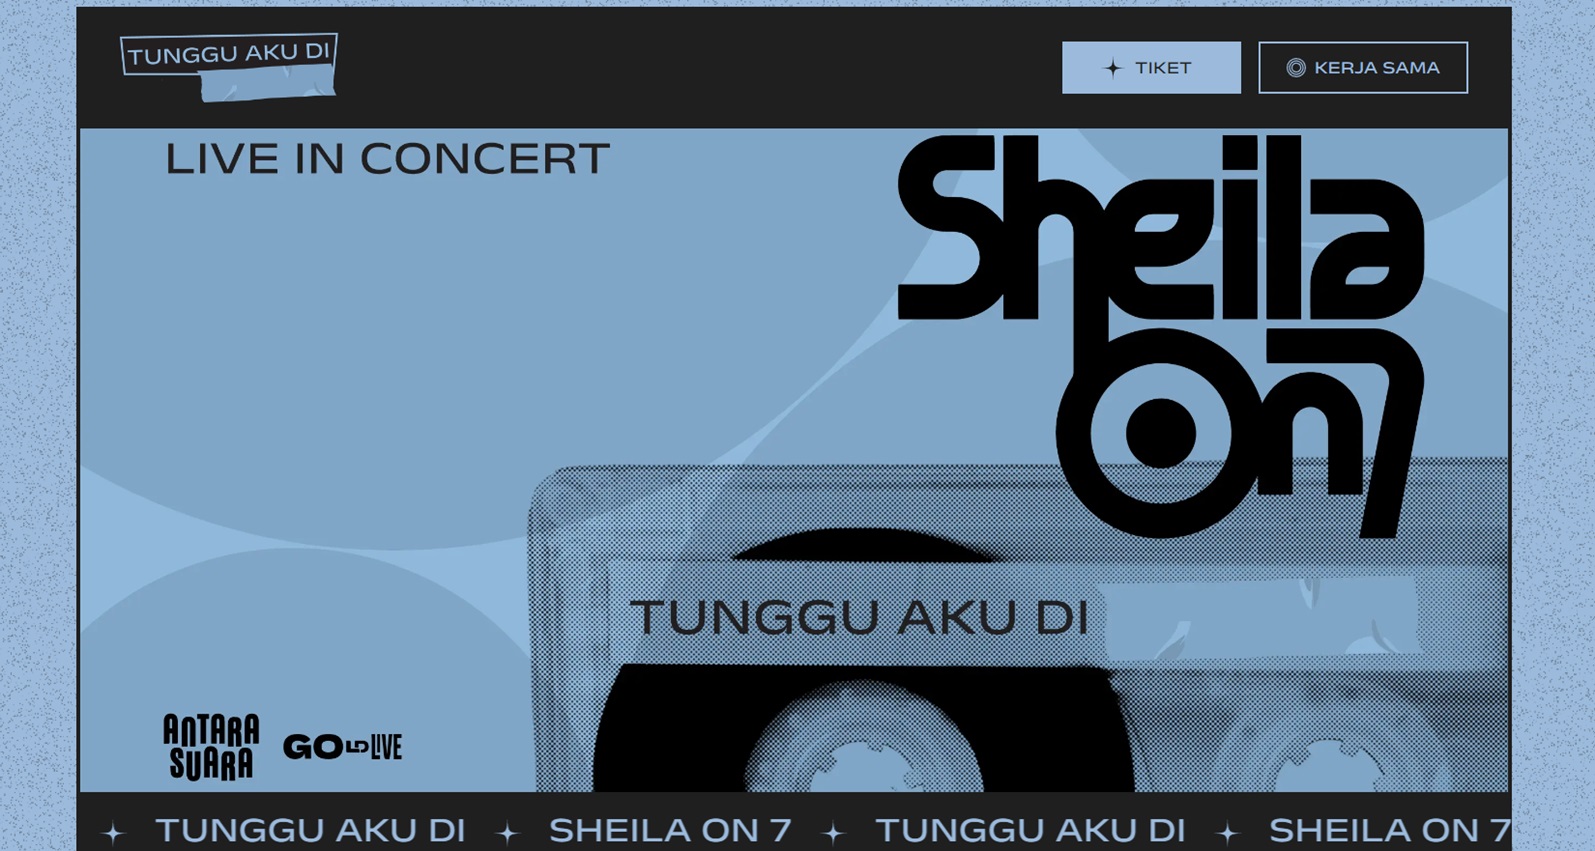 Sheila Gank! Tiket Konser Sheila On 7 'Tunggu Aku Di' 5 Kota Dapat Dibeli Mulai 27 April, Buruan Klik di Sini 